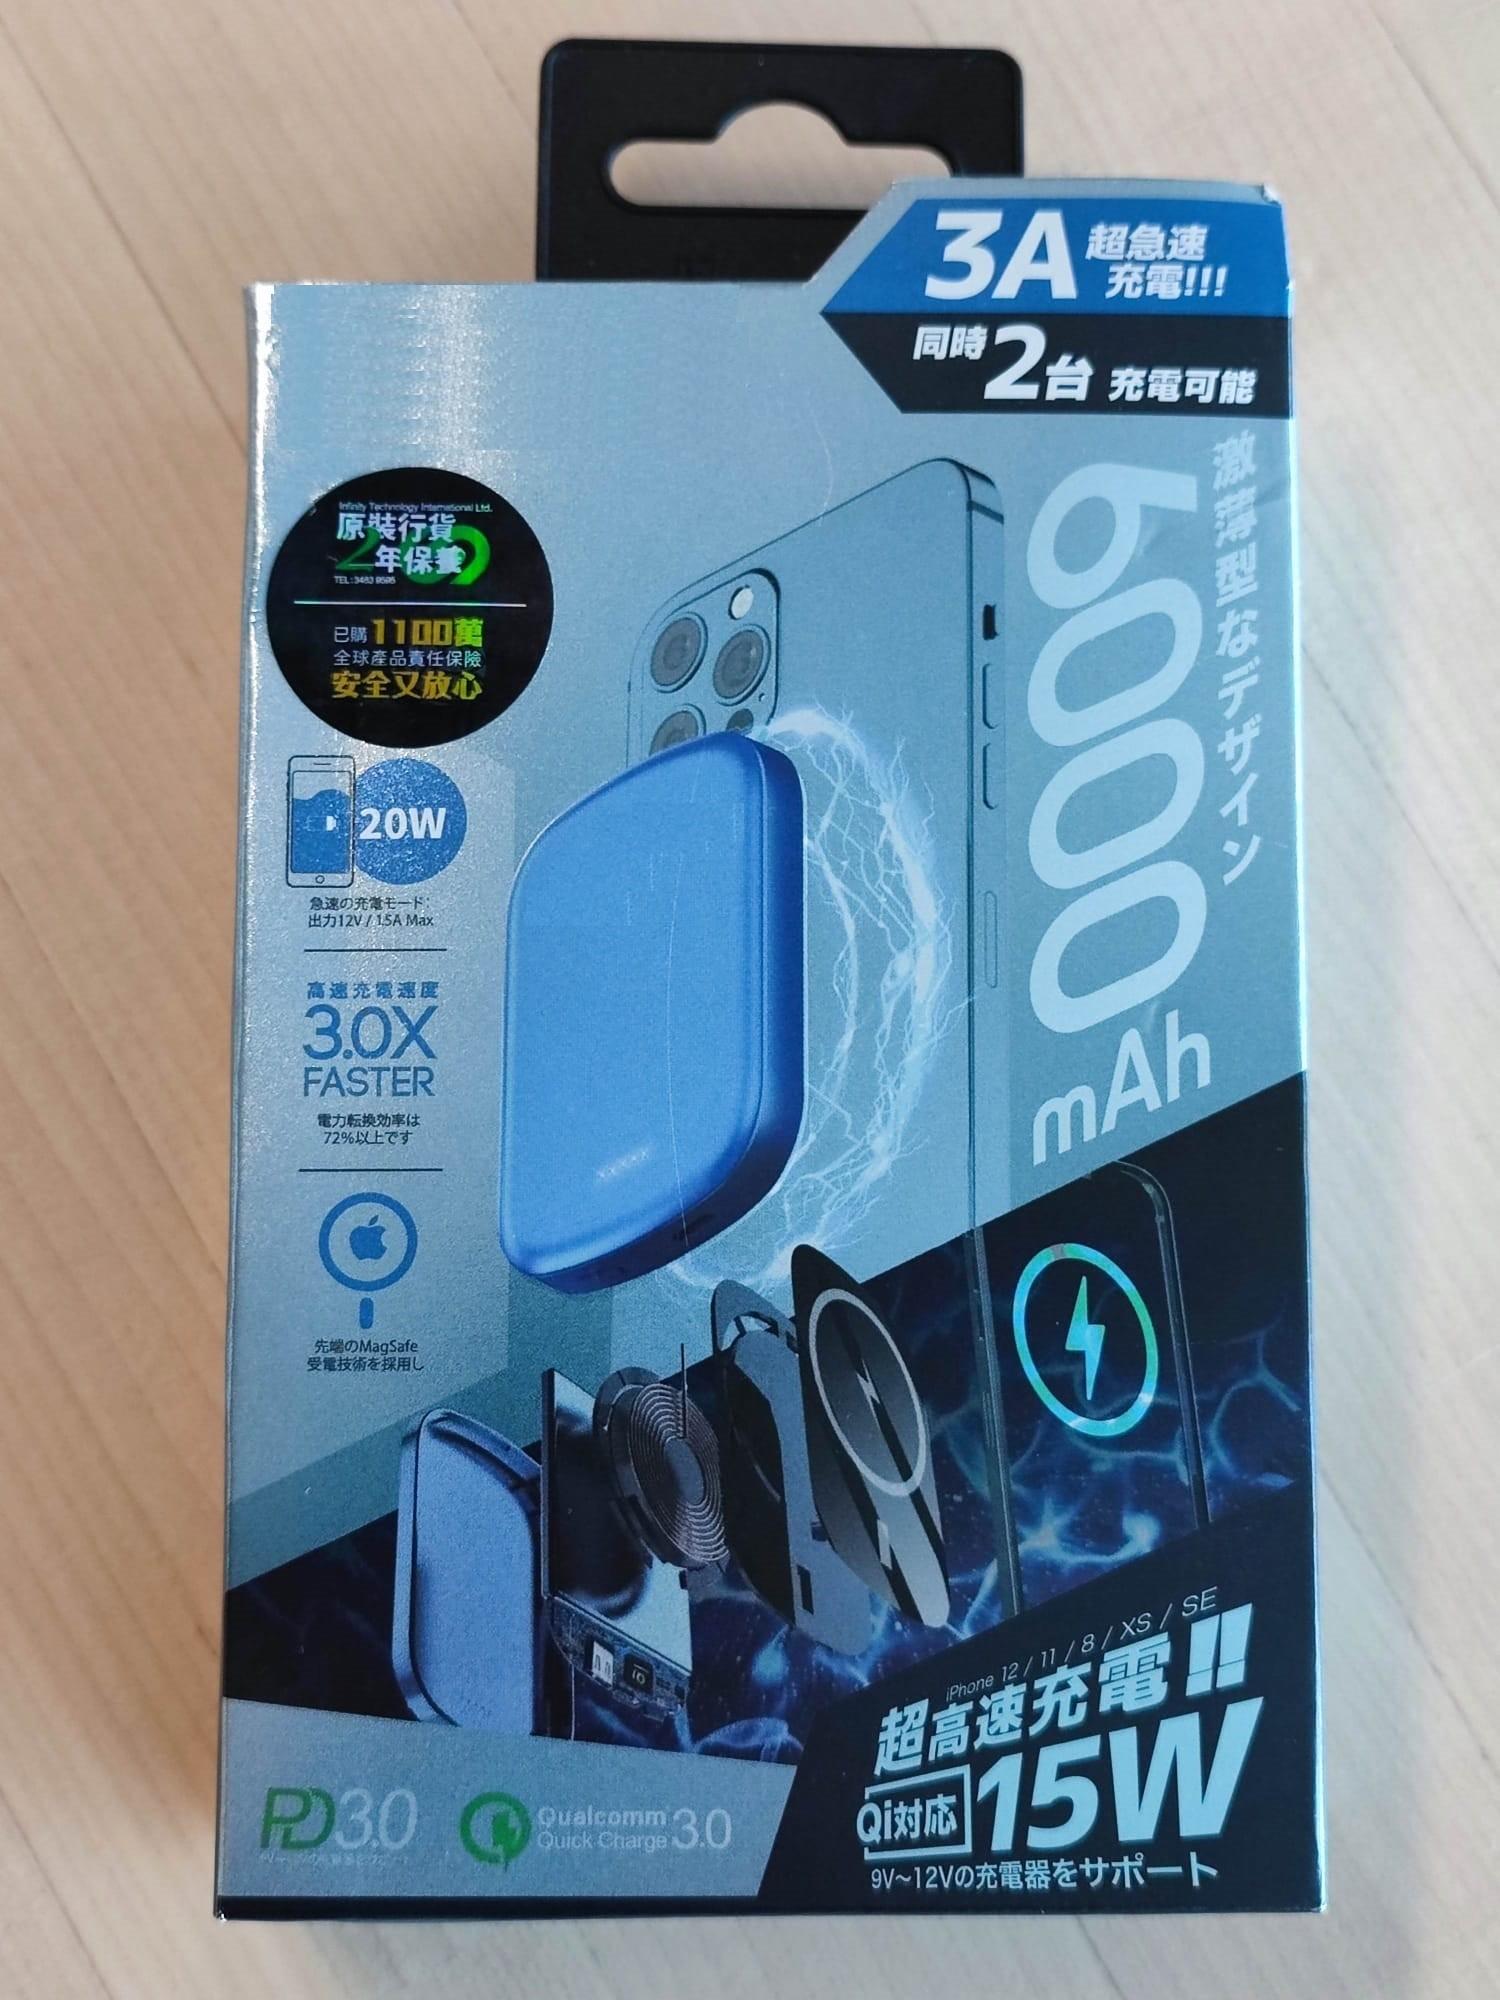 ​香港海關檢獲懷疑附有虛假商品說明的外置充電器